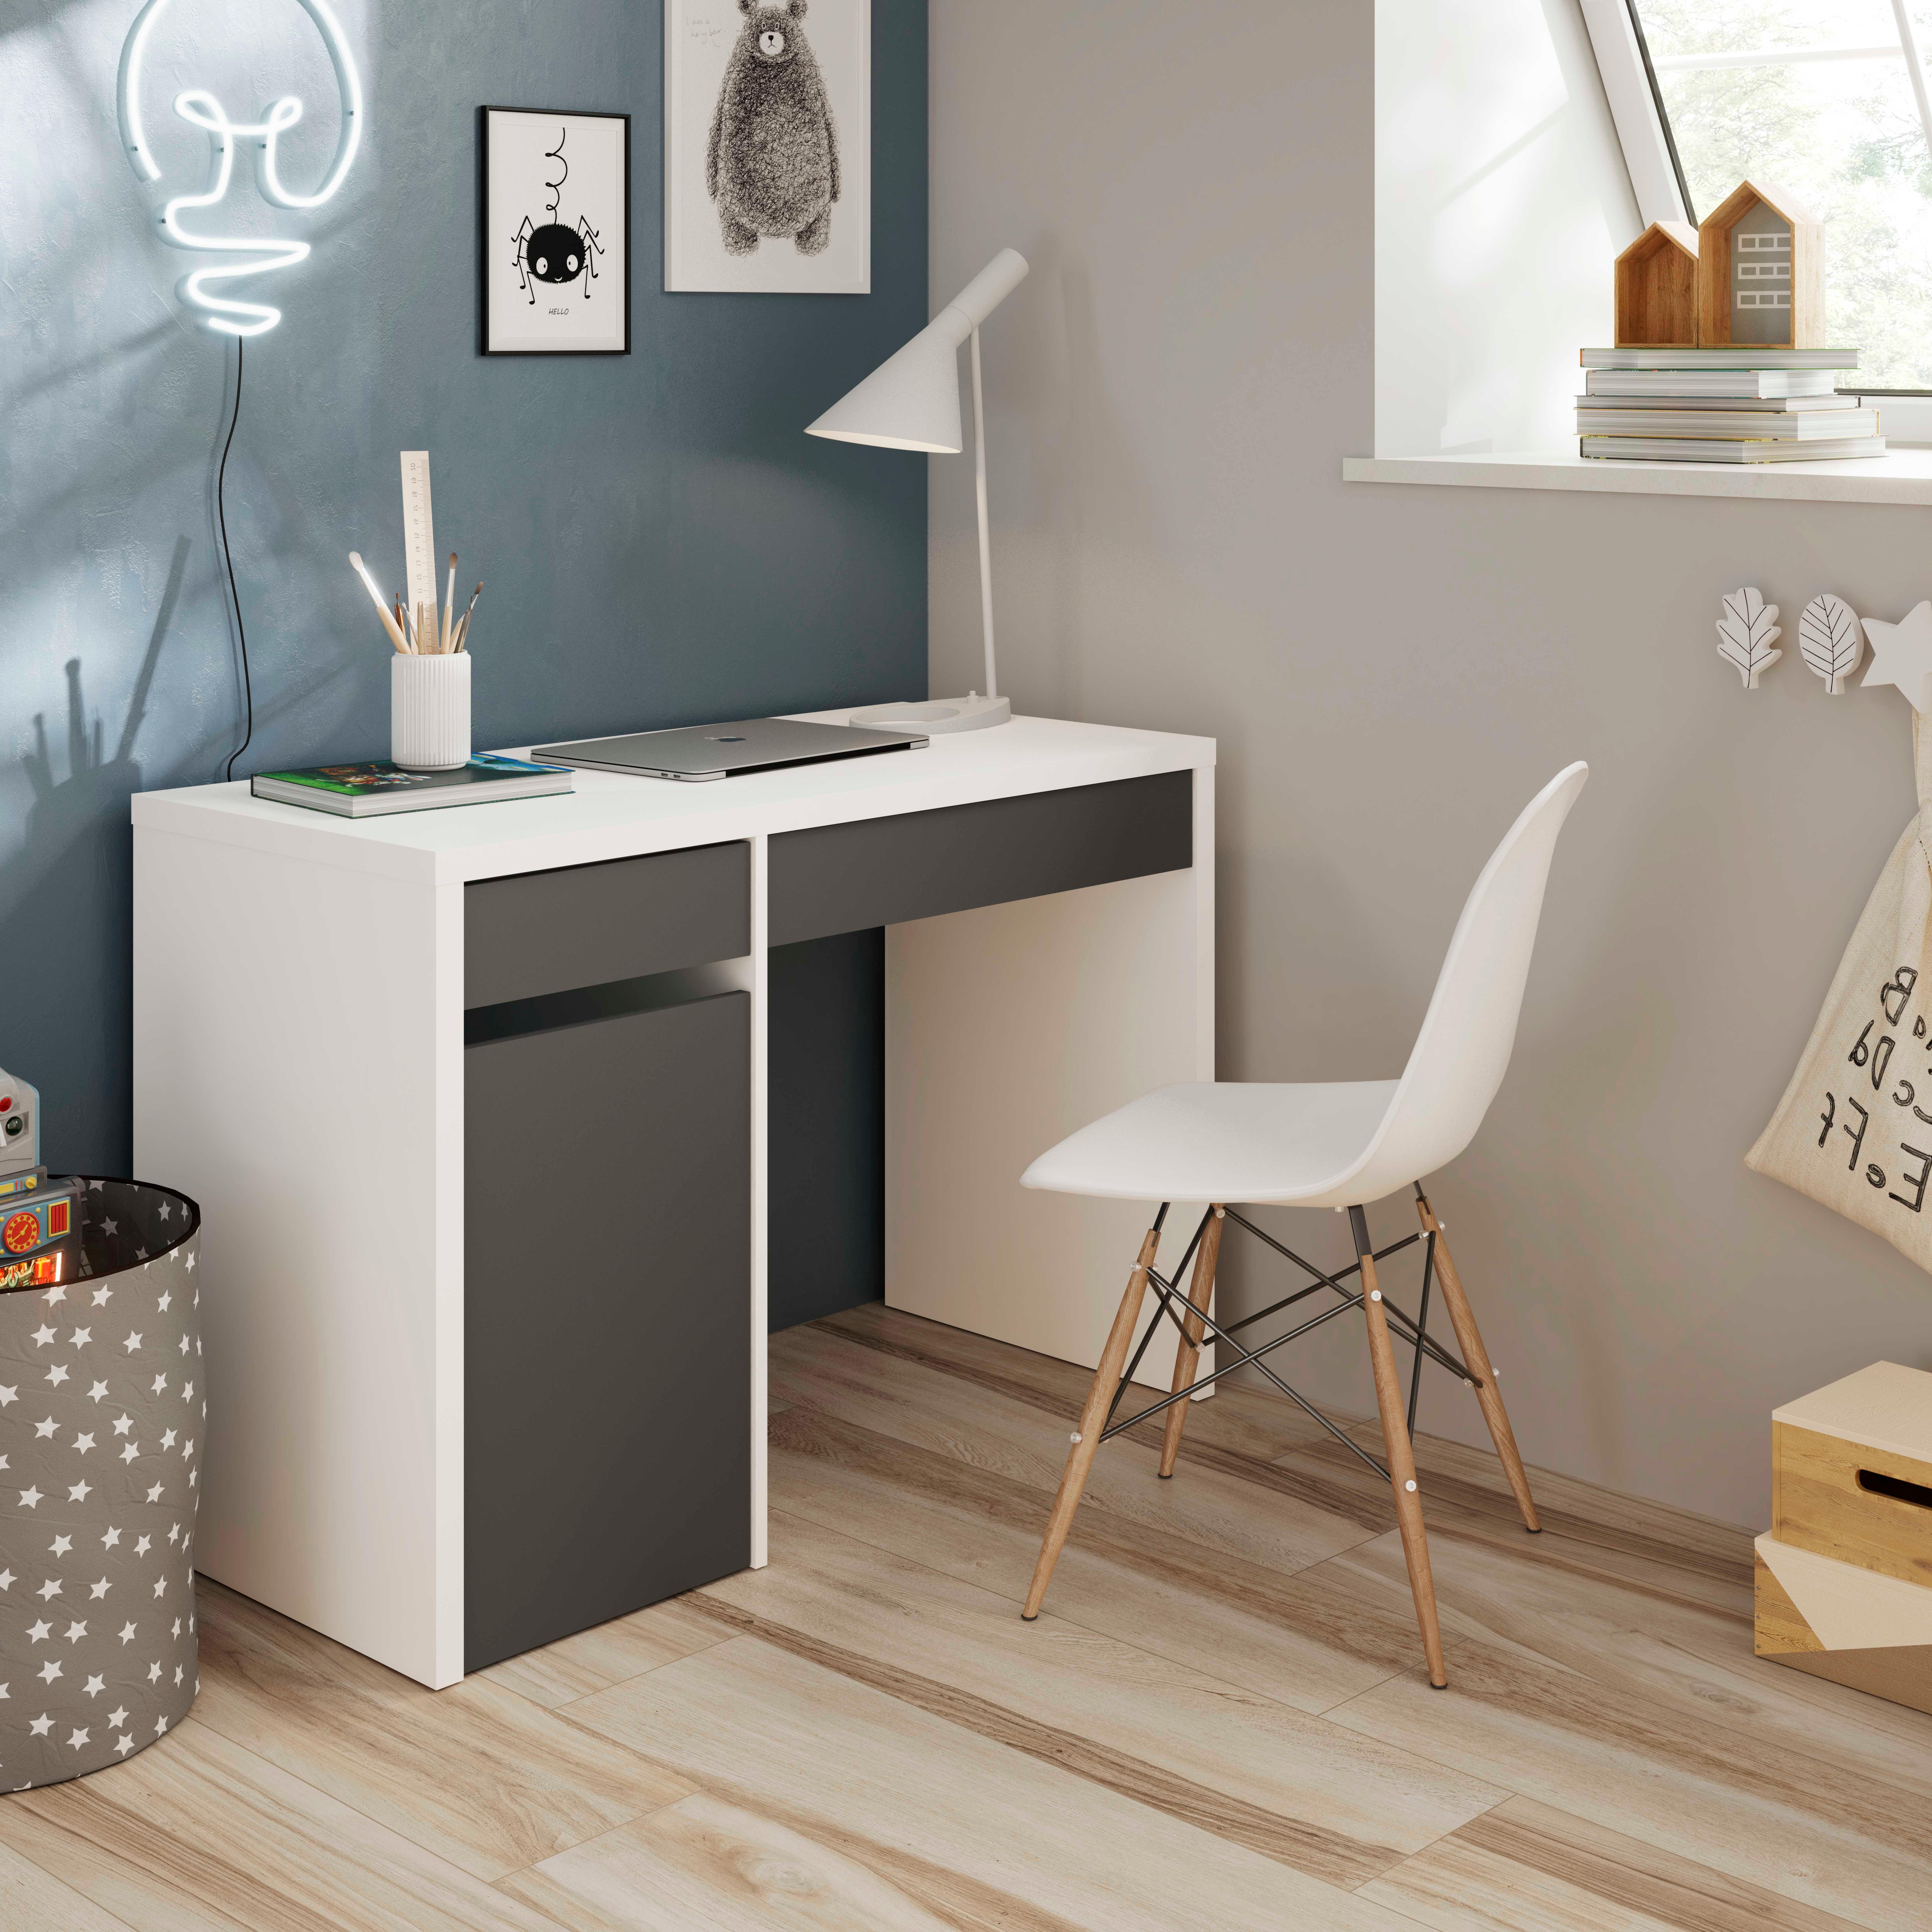 Mesa de estudio mia con dos cajones y una puerta color blanco y gris 74x109x50cm